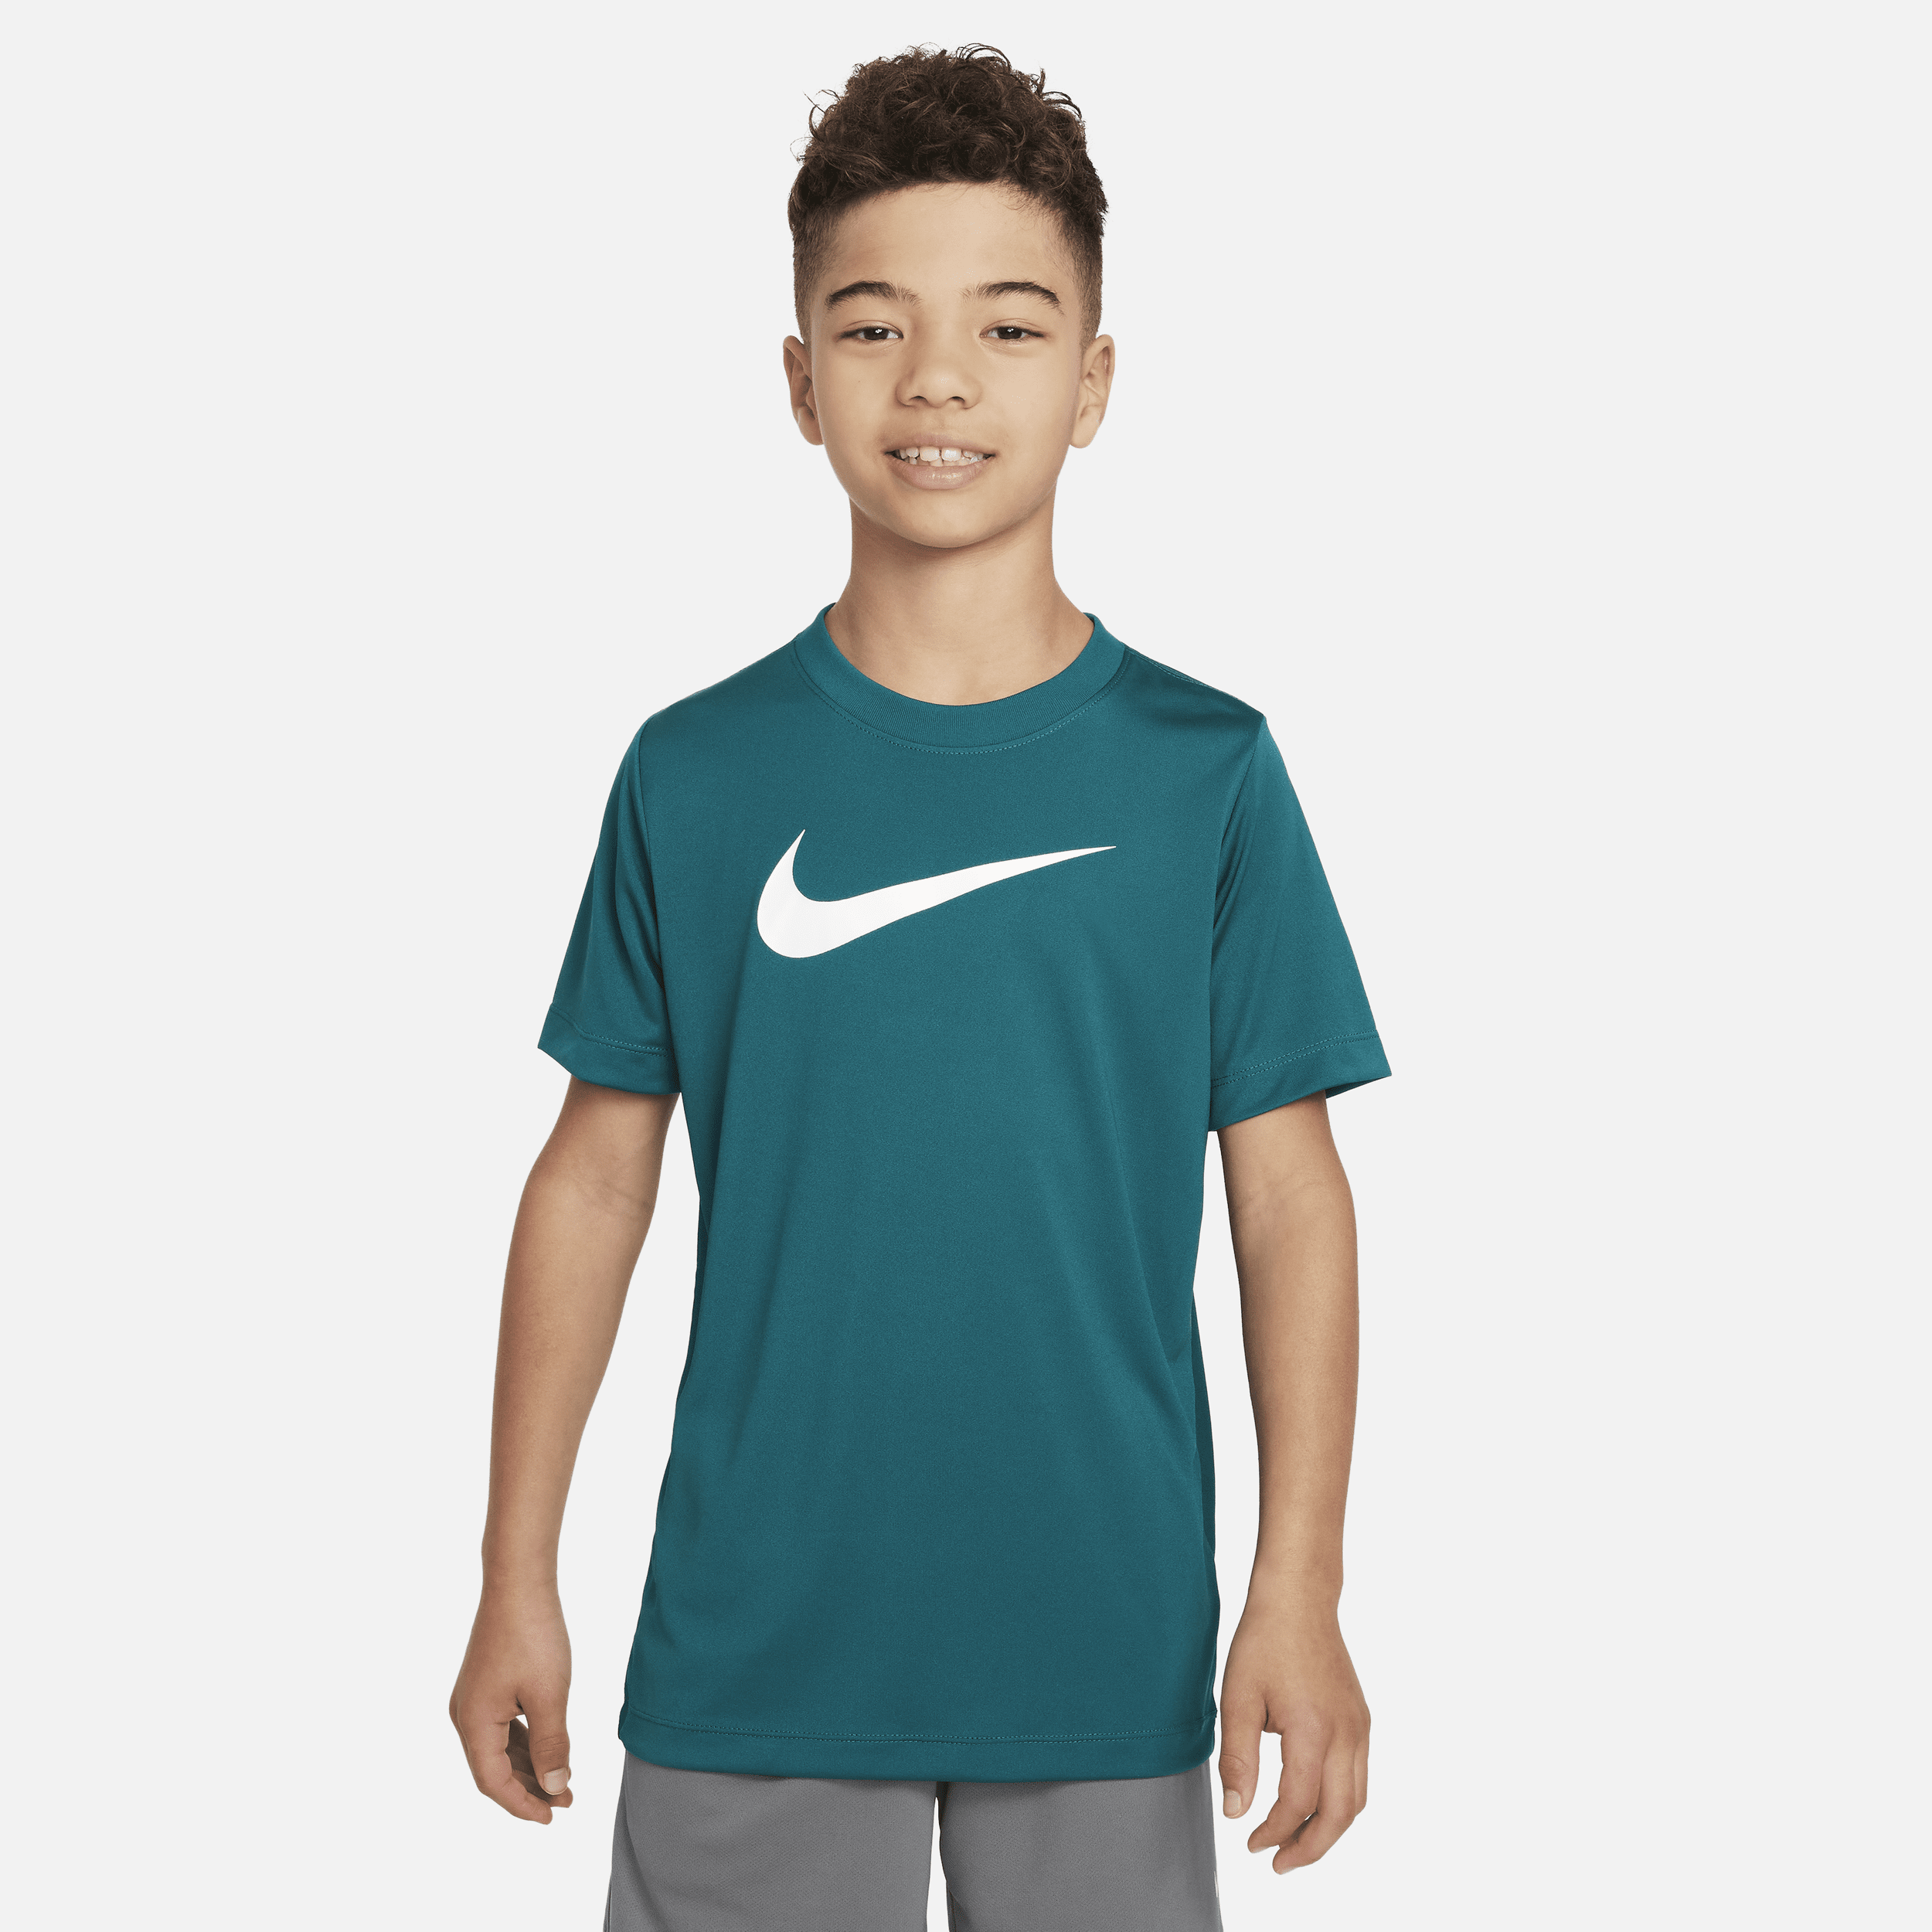 Nike Dri-fit Legend Big Kids' (boys') T-shirt In Green